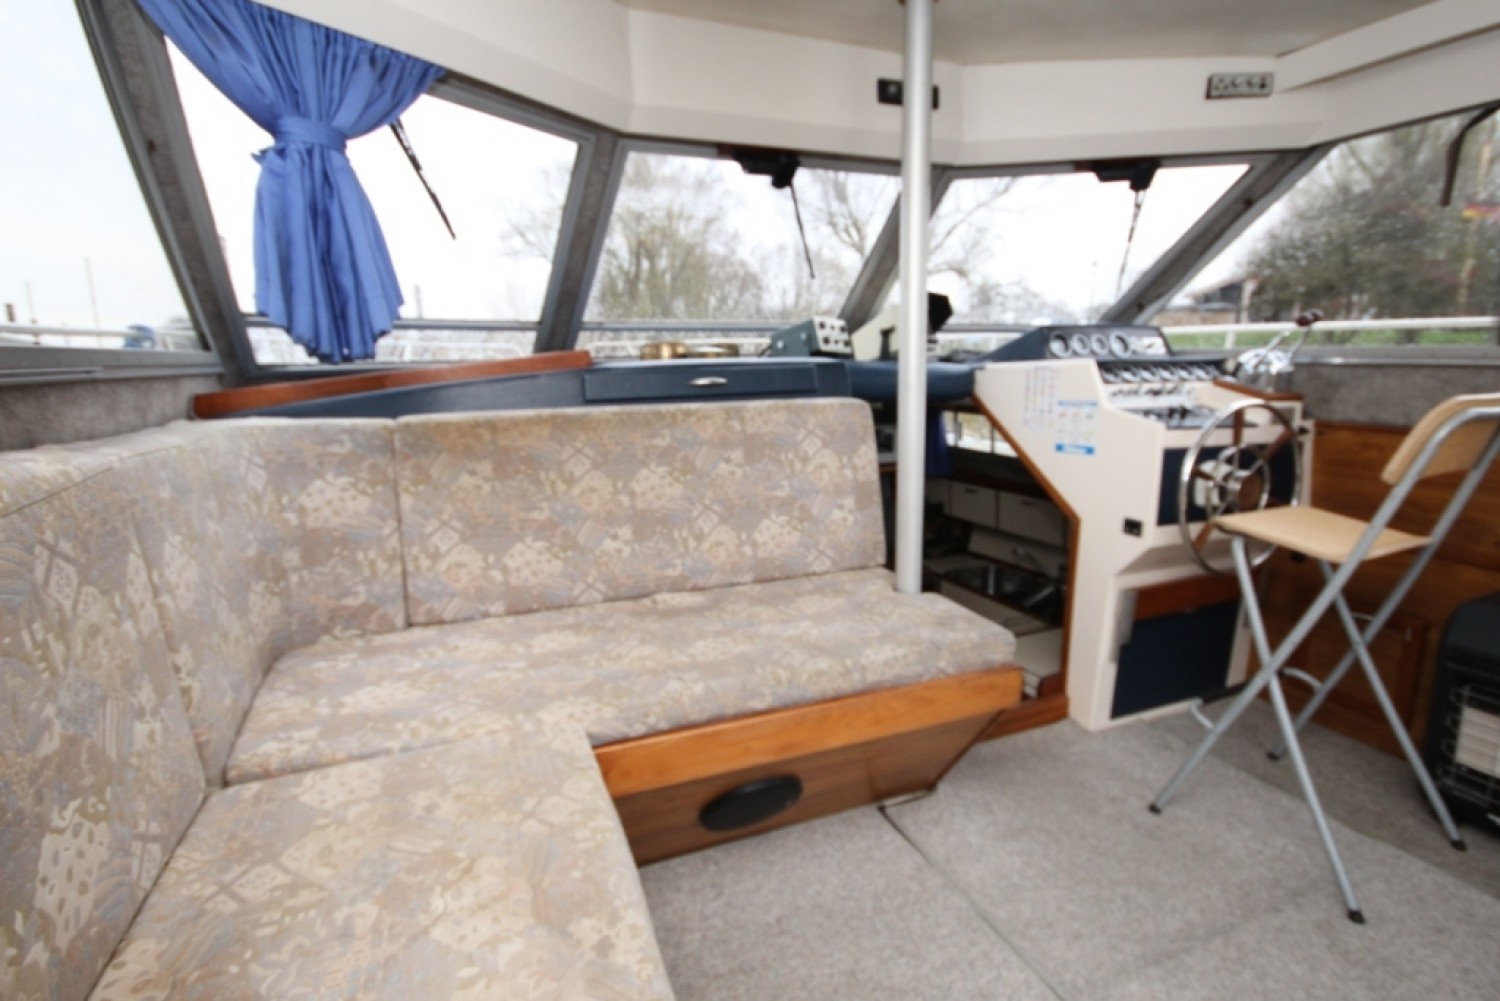 Princess 37 | Boat for sale - Jachtmakelaardij de Maas